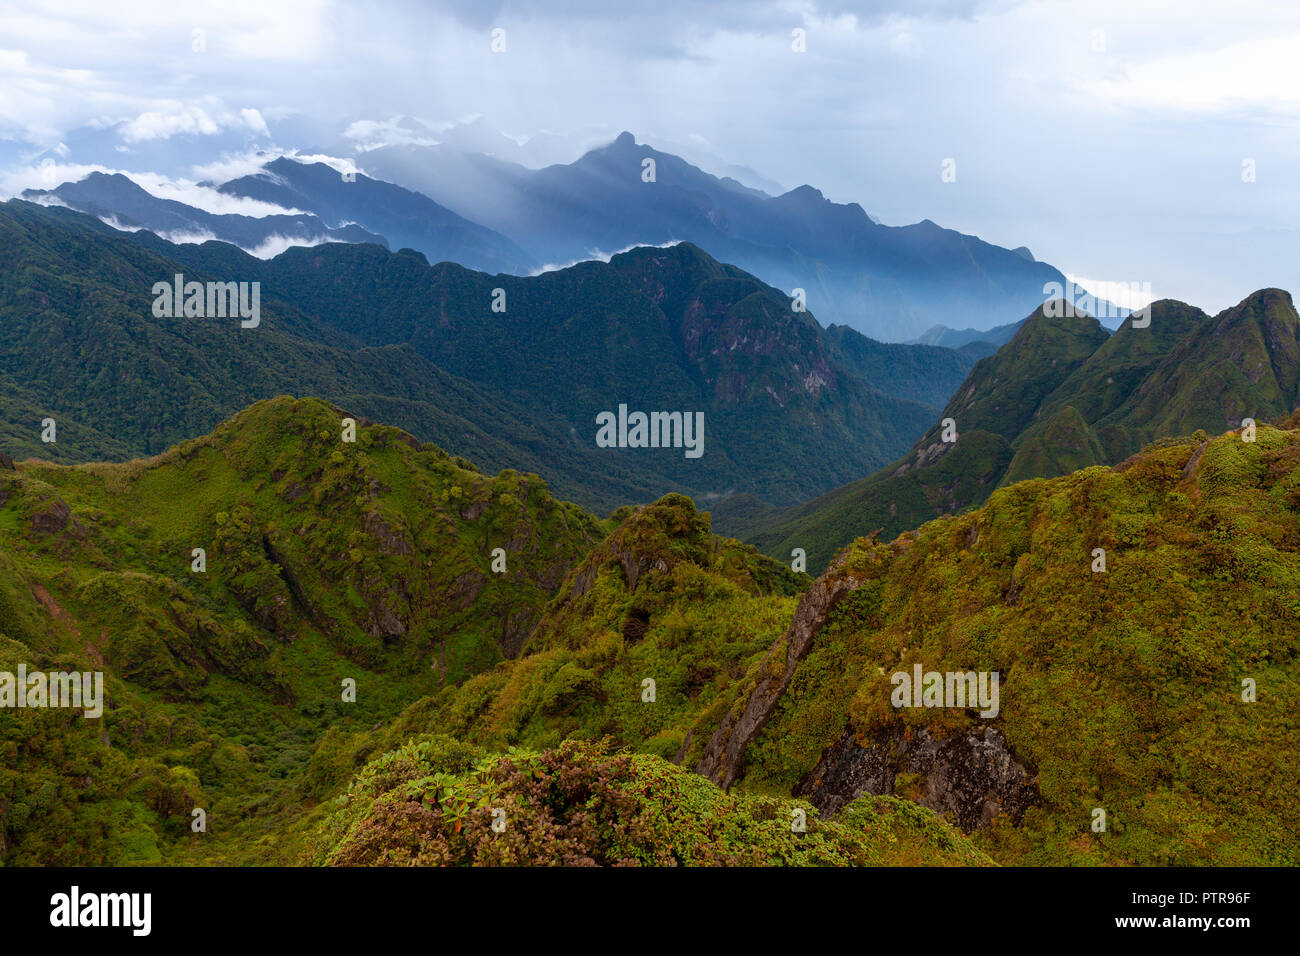 Impresionante vista de la orografía de la cumbre del pico más alto de Indochina, el Monte Fansipan, Lao Cai, SAPA, Vietnam Foto de stock